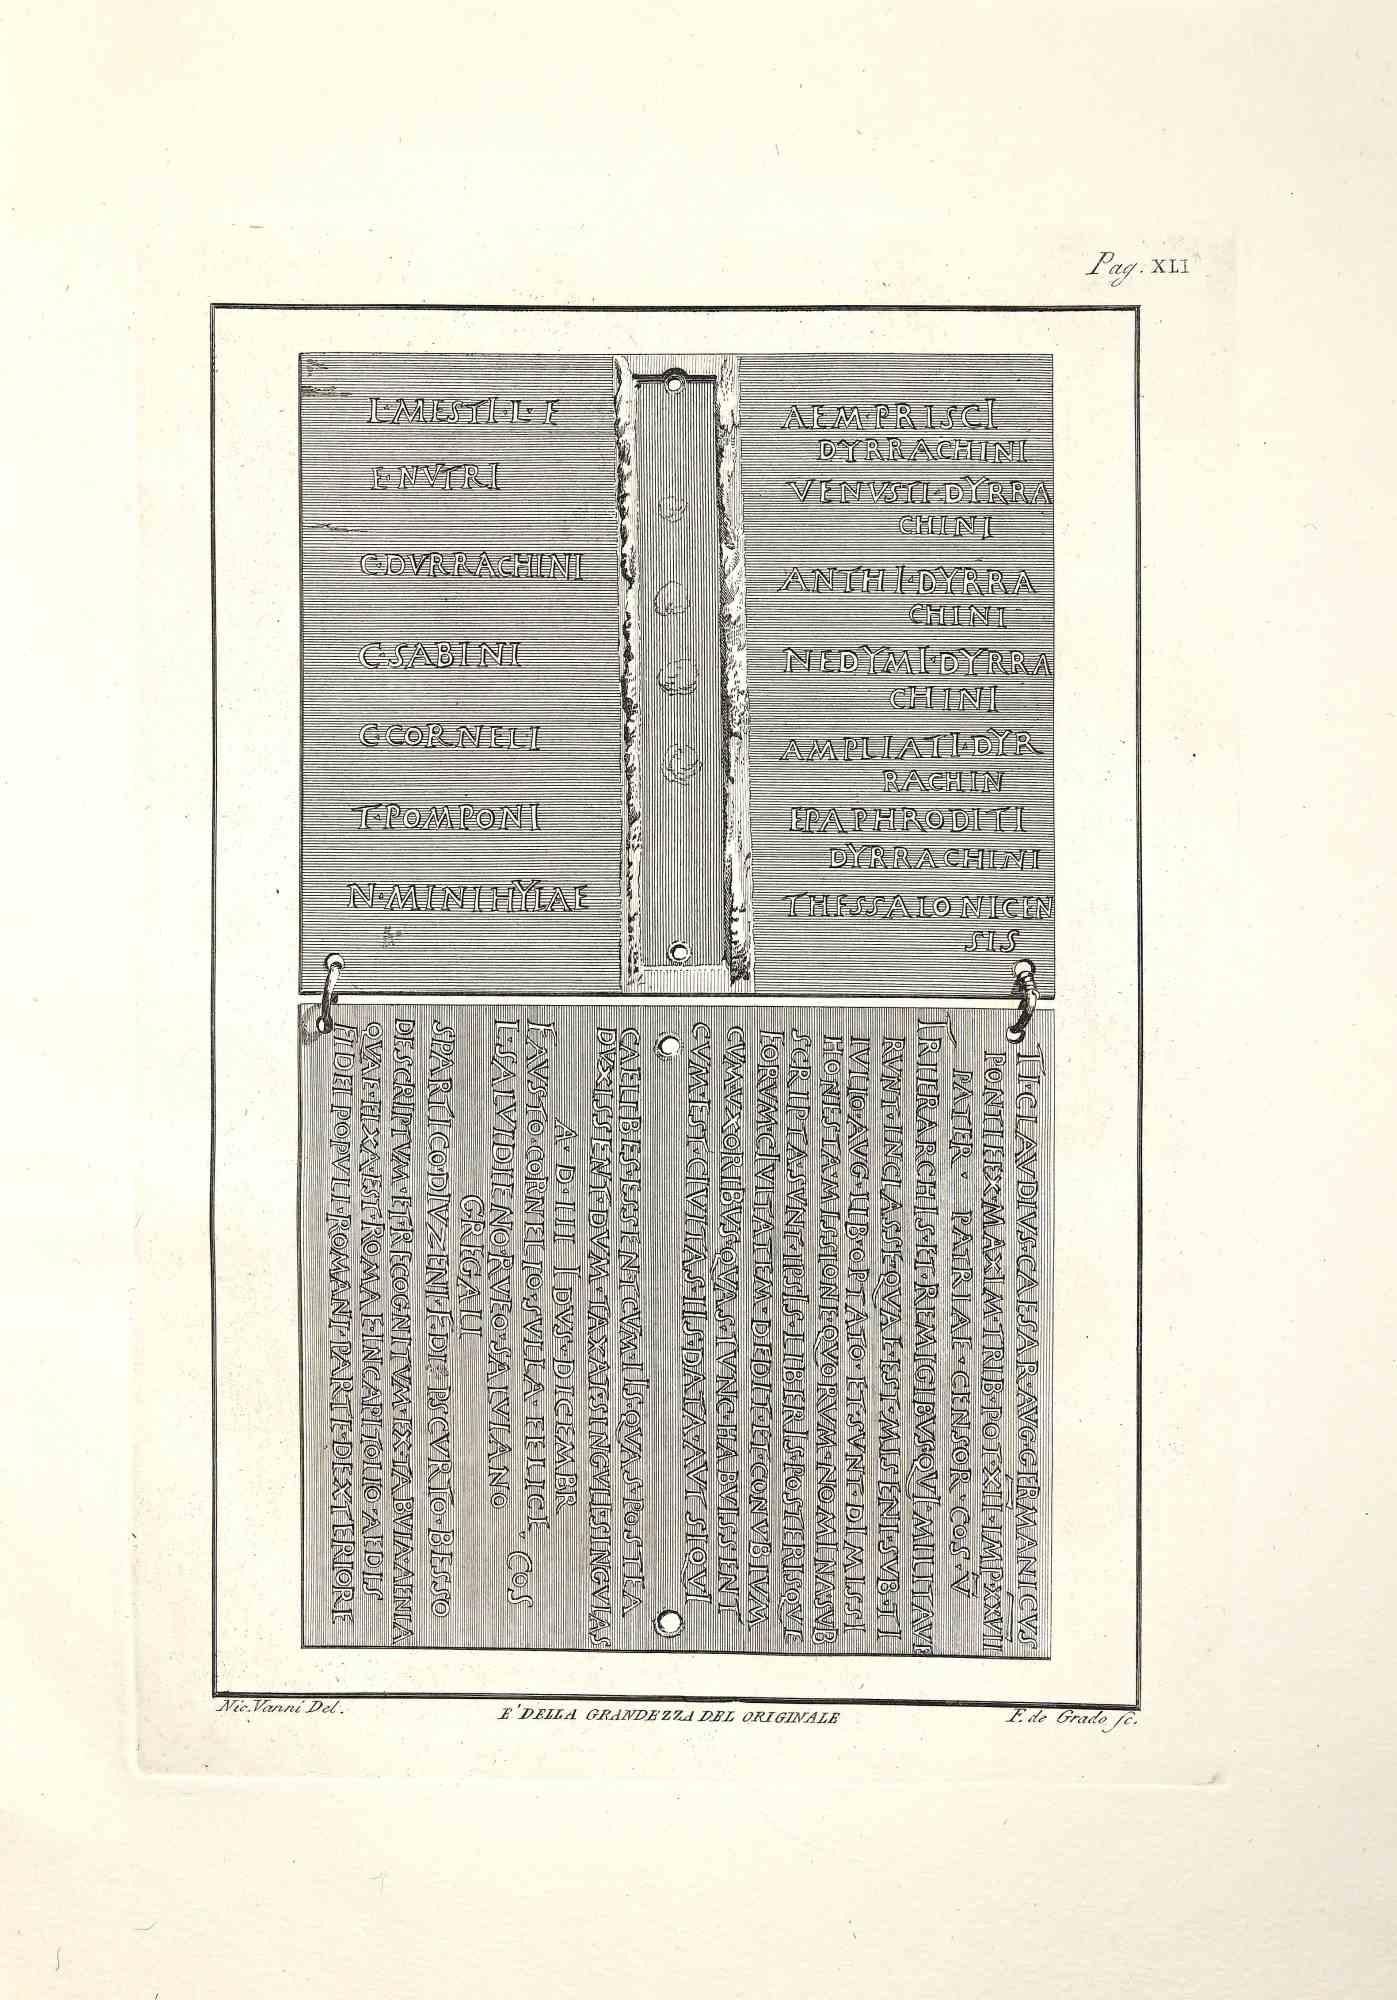 Antike römische Inschriften in Herculaneum, aus der Serie "Antiquities of Herculaneum Exposed", ist eine Originalradierung von Filippo de Grado aus dem späten 18. Jahrhundert.

Signiert auf der Platte

Gute Bedingungen.

Die Radierung gehört zu der